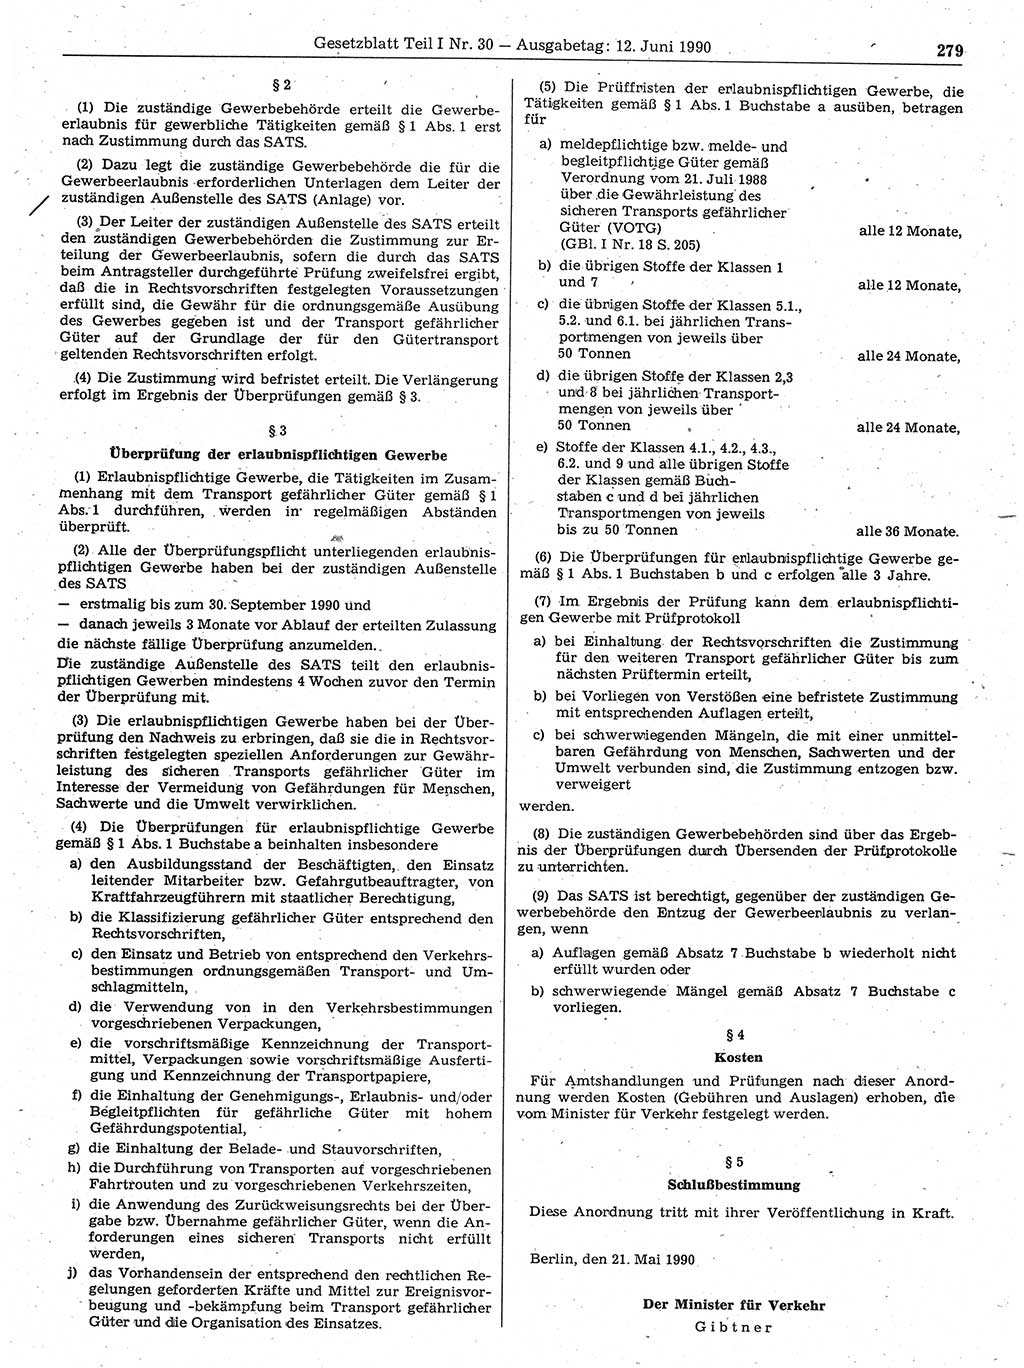 Gesetzblatt (GBl.) der Deutschen Demokratischen Republik (DDR) Teil Ⅰ 1990, Seite 279 (GBl. DDR Ⅰ 1990, S. 279)